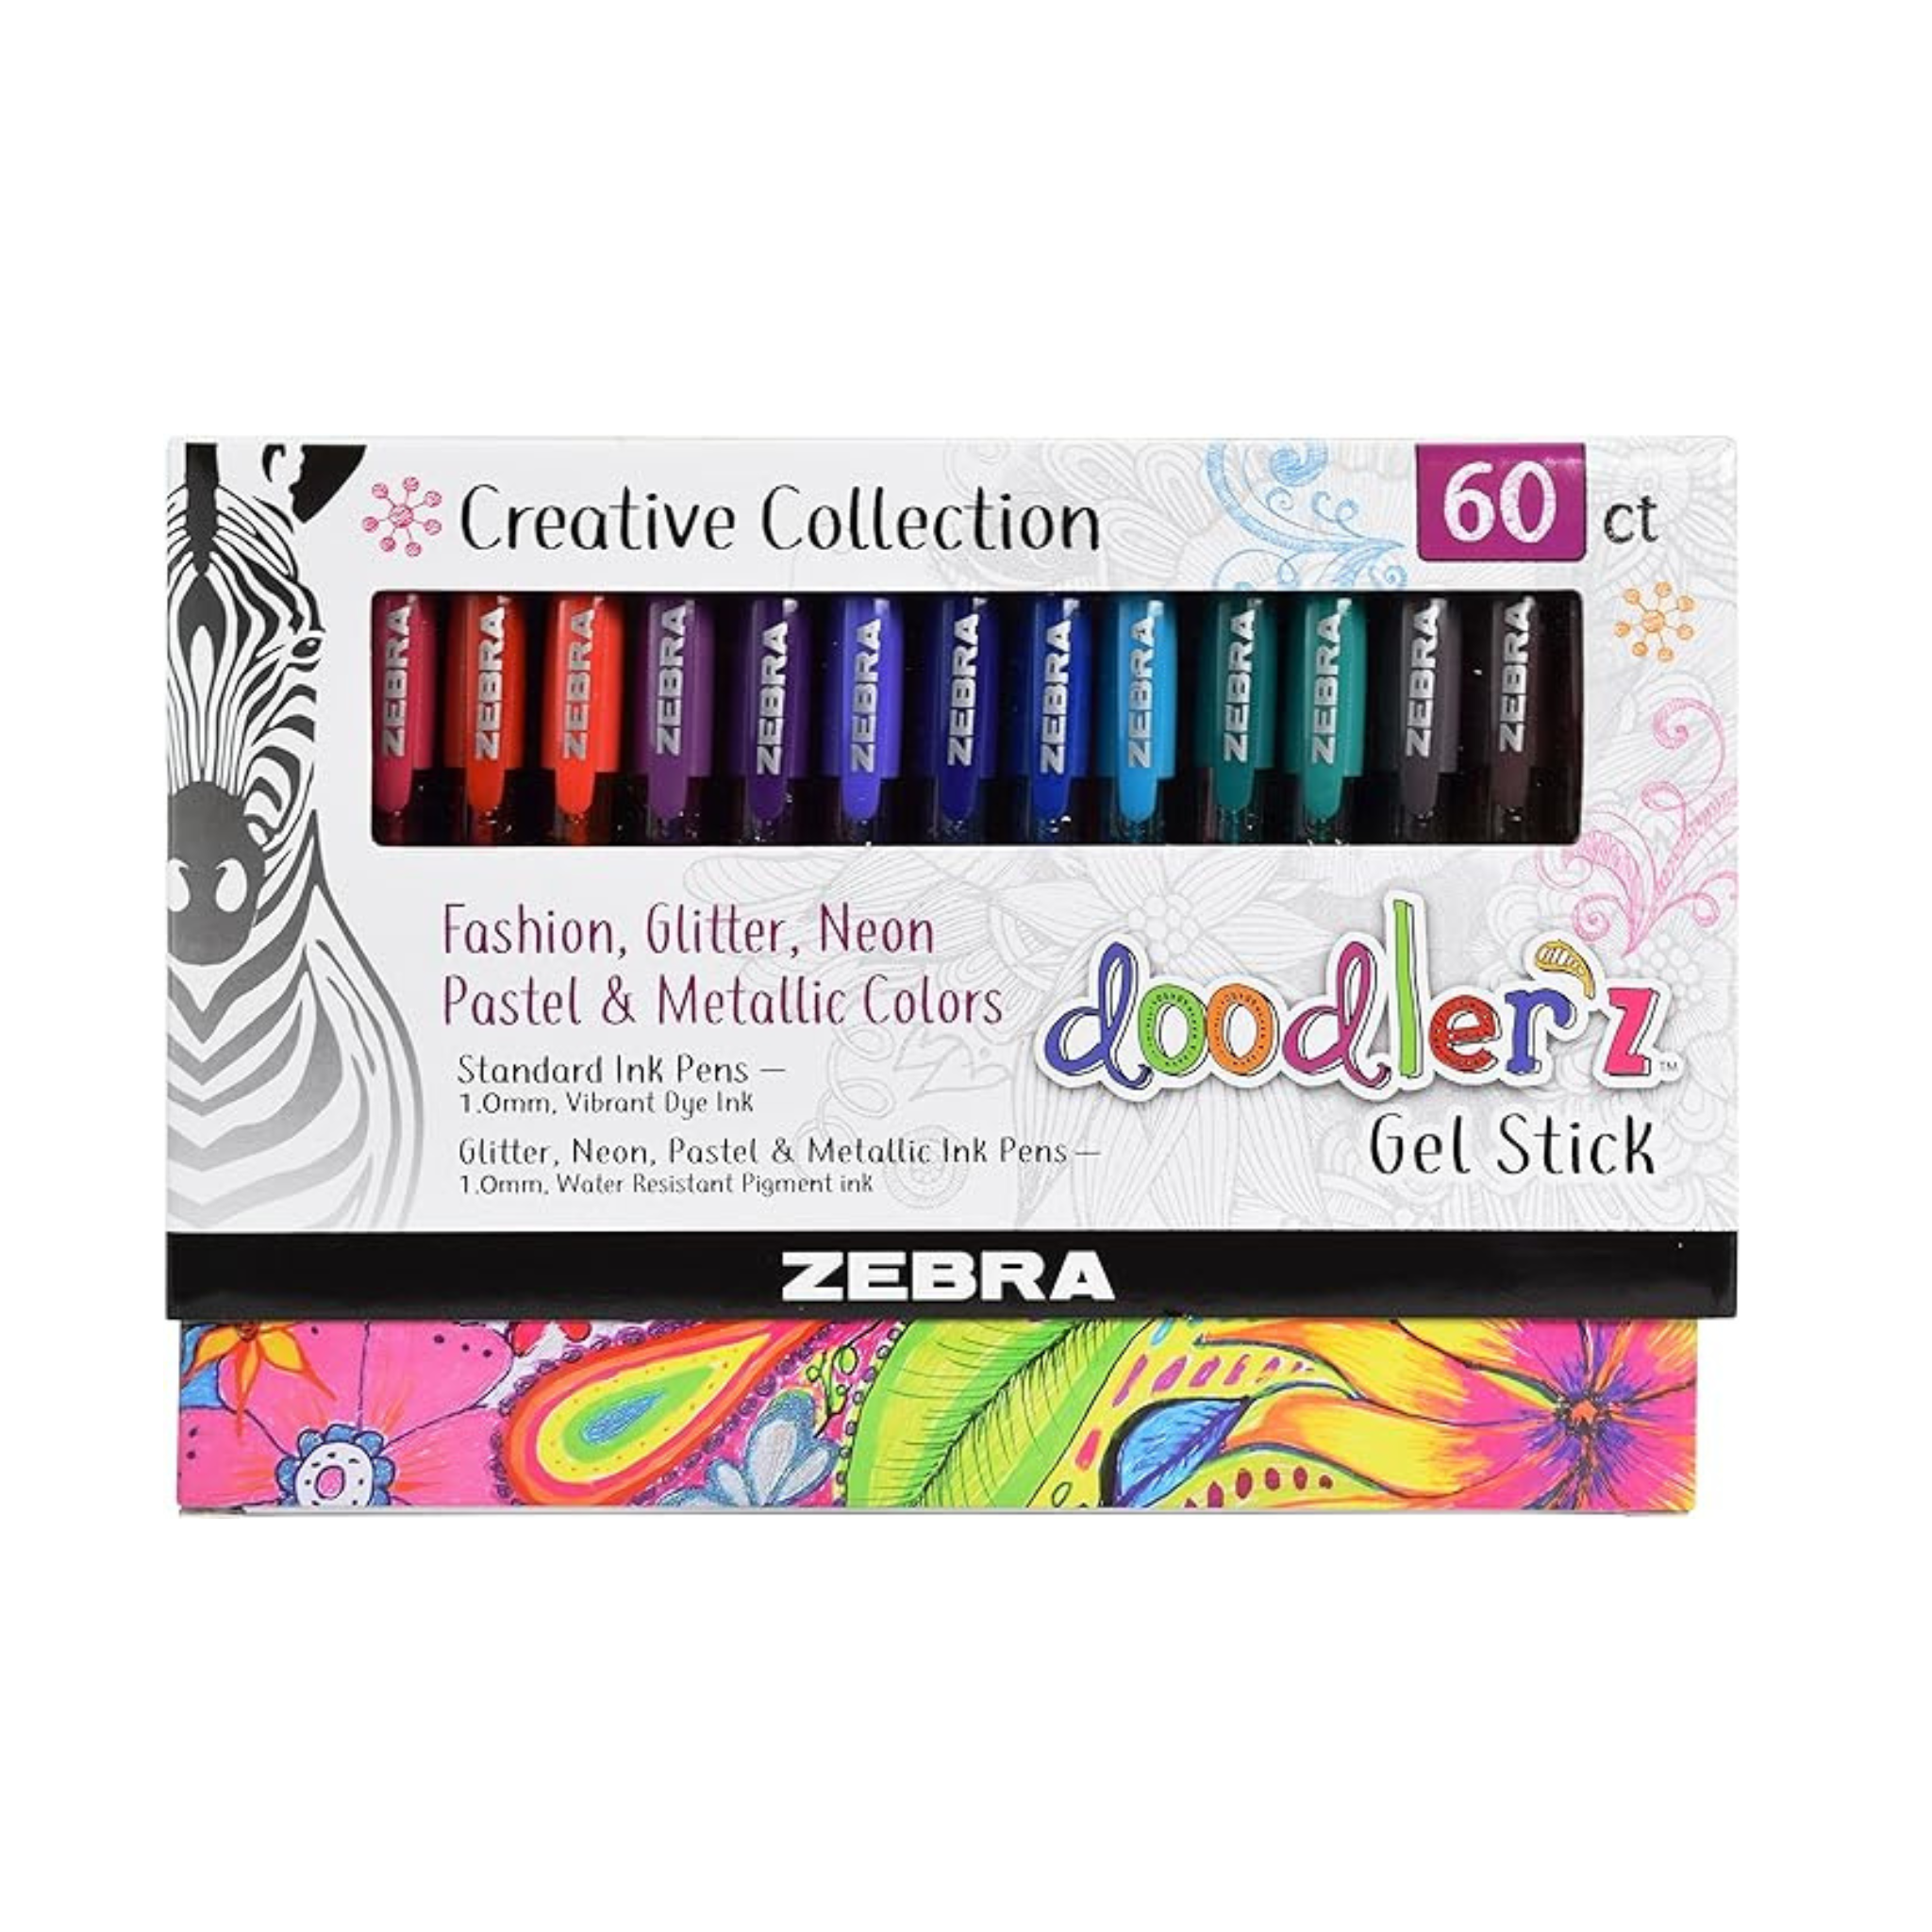 60 Zebra Gel Stick Doodler'z Pens